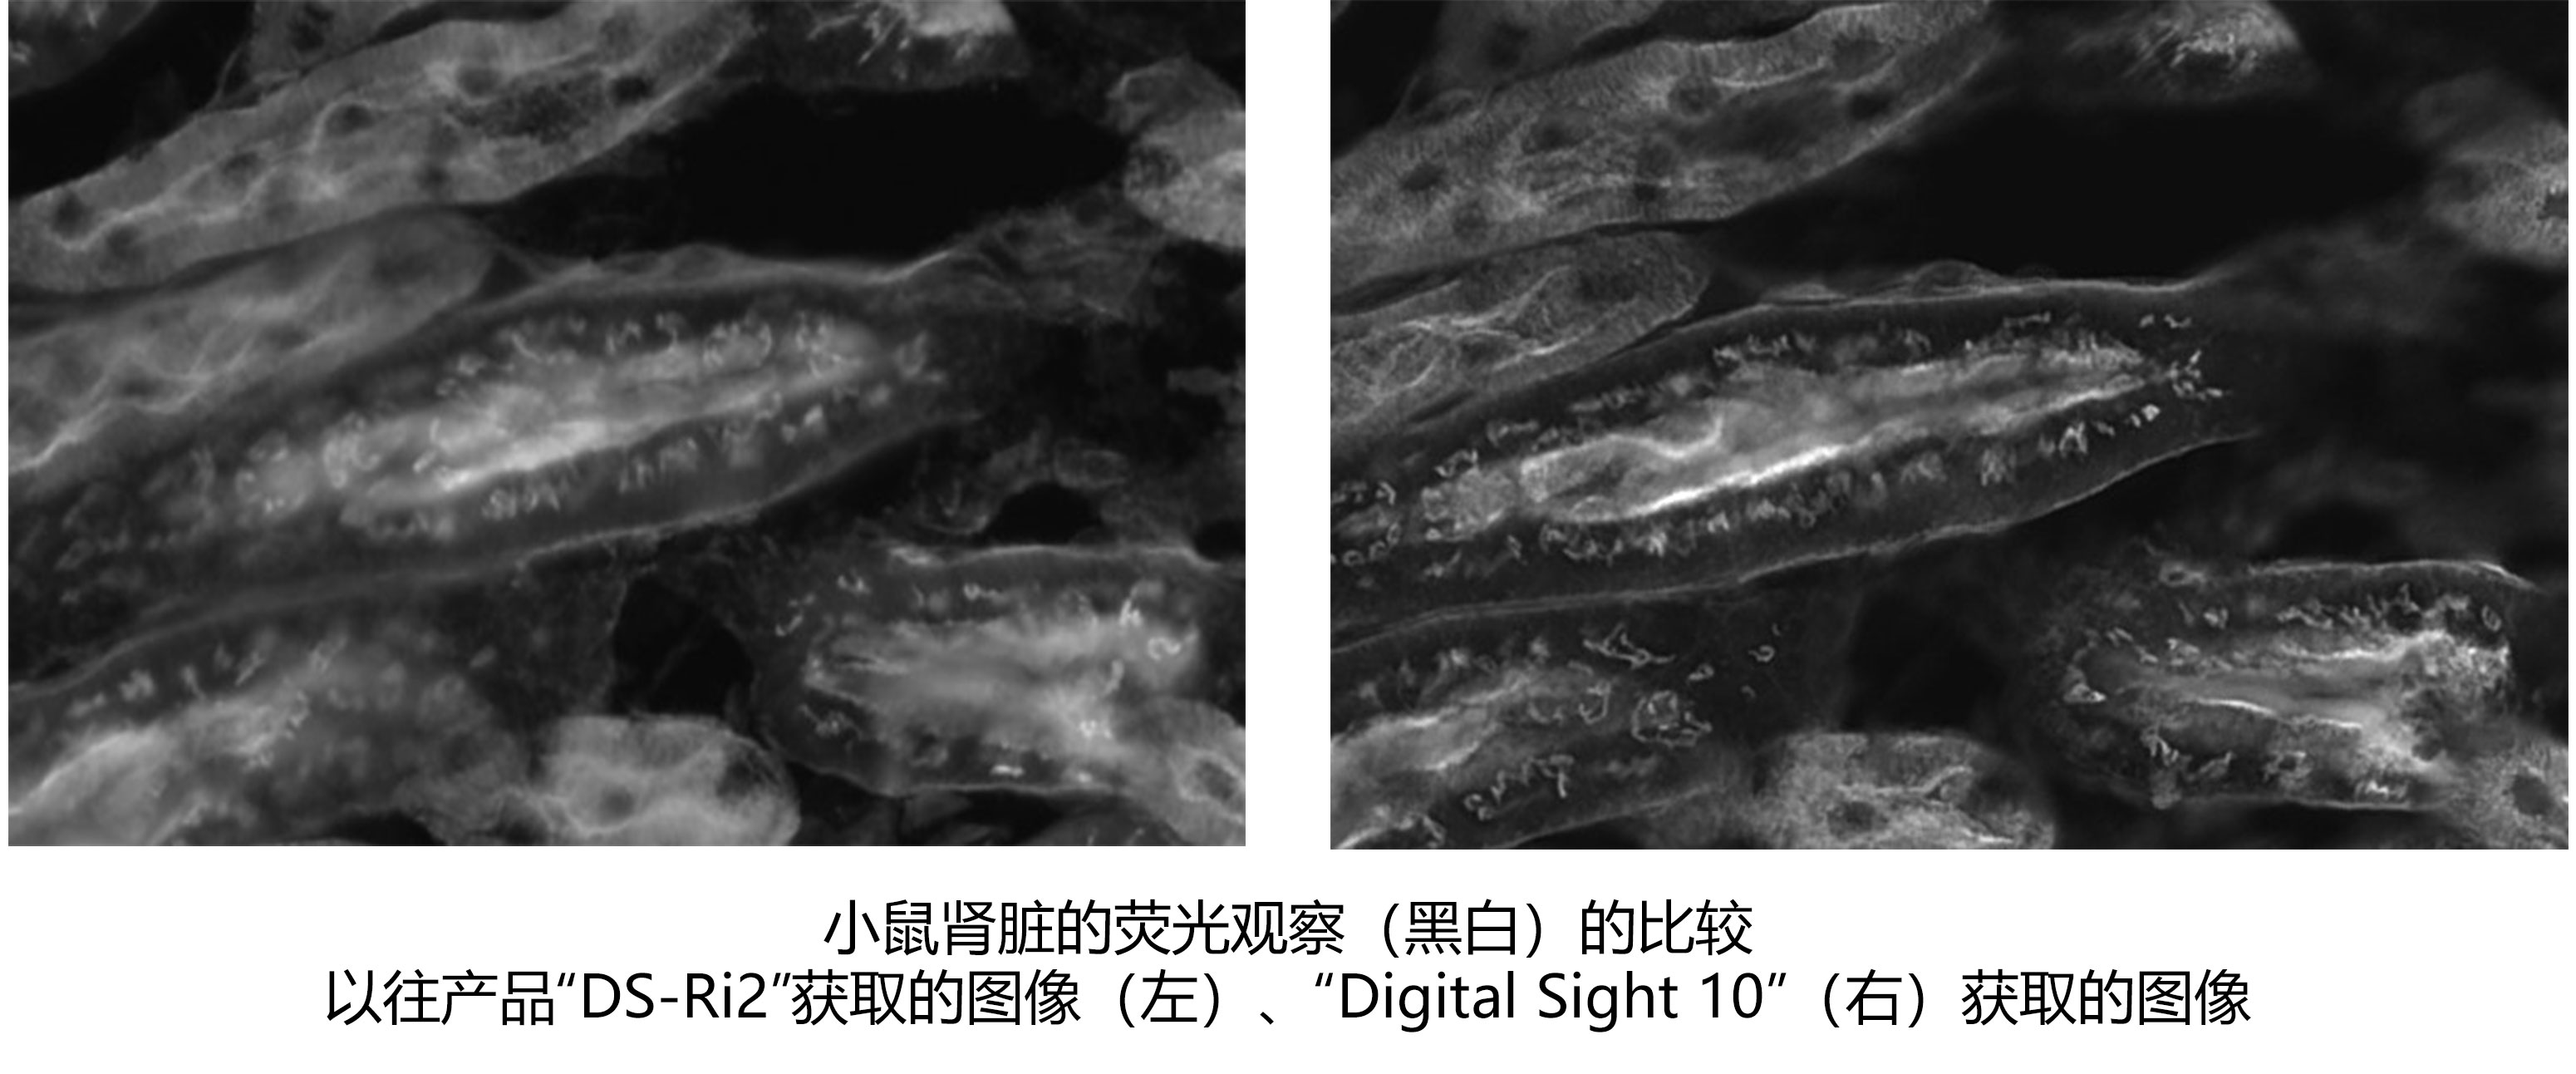 小鼠肾脏的荧光观察（黑白）的比较以往产品“DS-Ri2”获取的图像（左）、“Digital Sight 10”（右）获取的图像